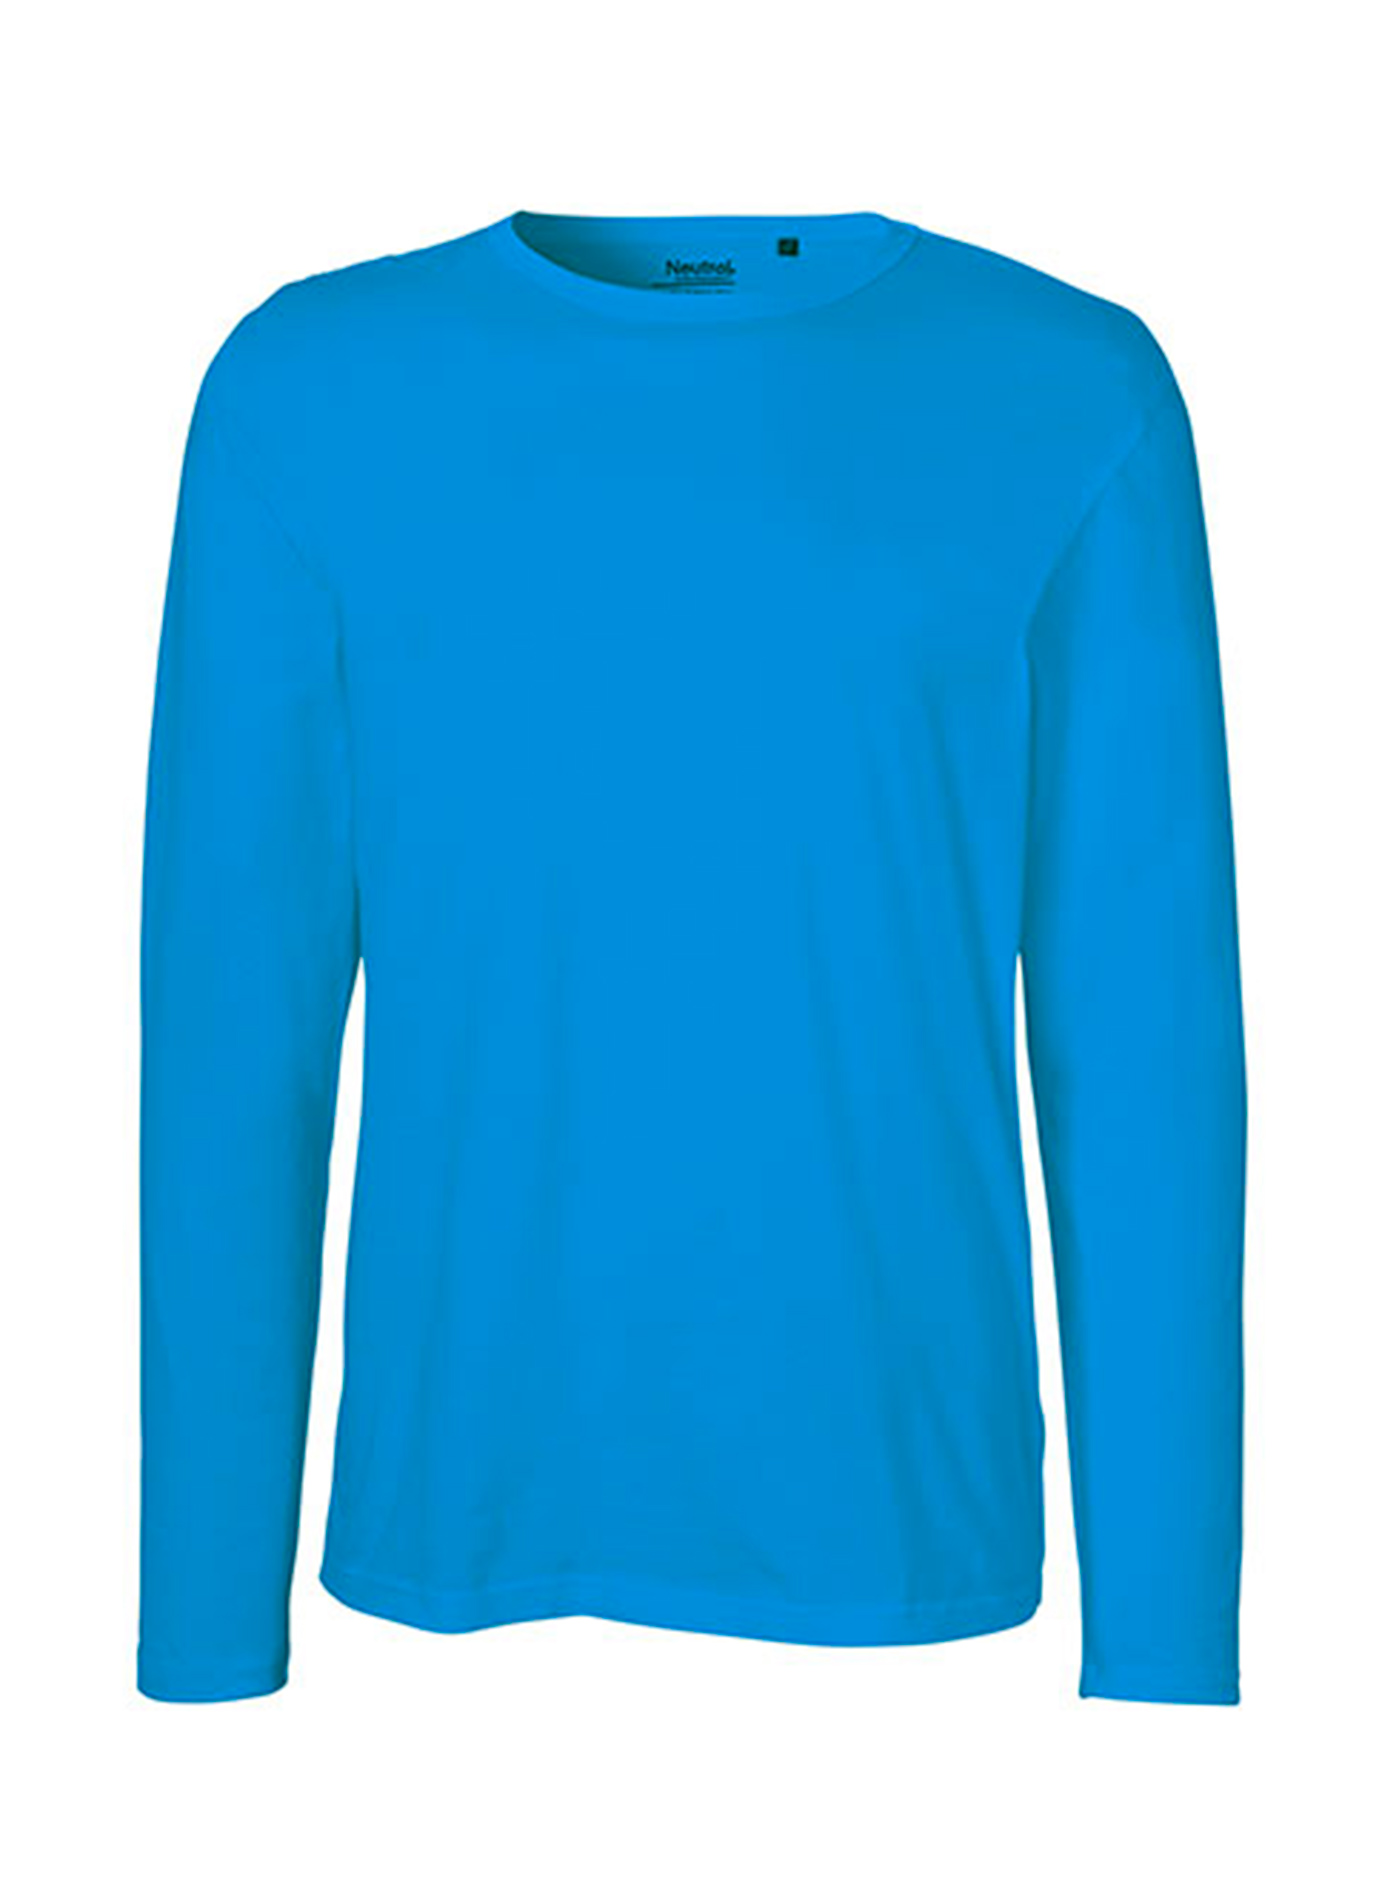 Pánské tričko s dlouhým rukávem Neutral - Safírově modrá S